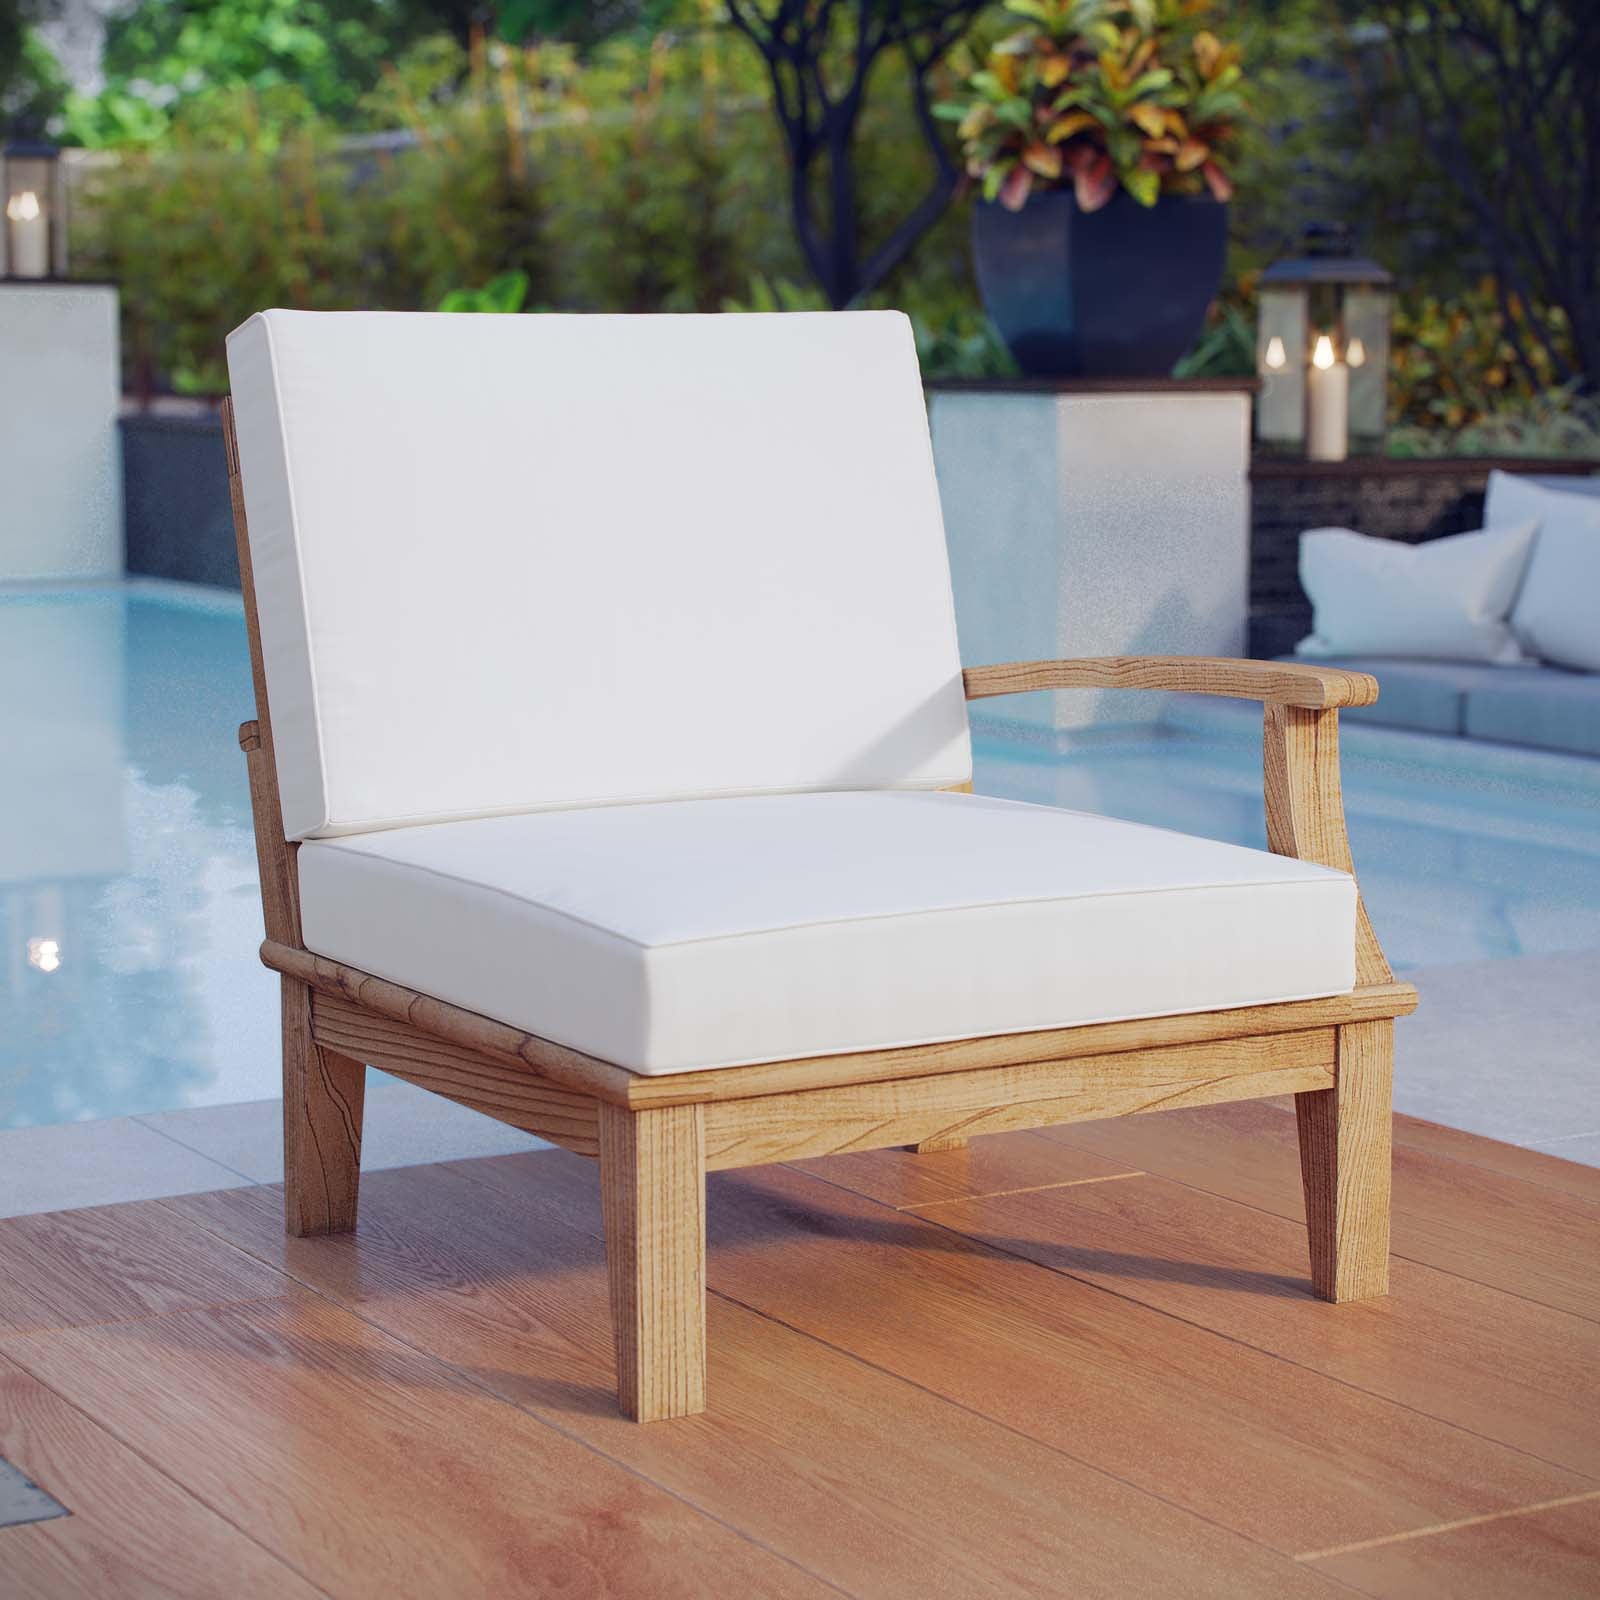 Modway Outdoor Sofas - Marina Outdoor Right-Facing Sofa White & Natural